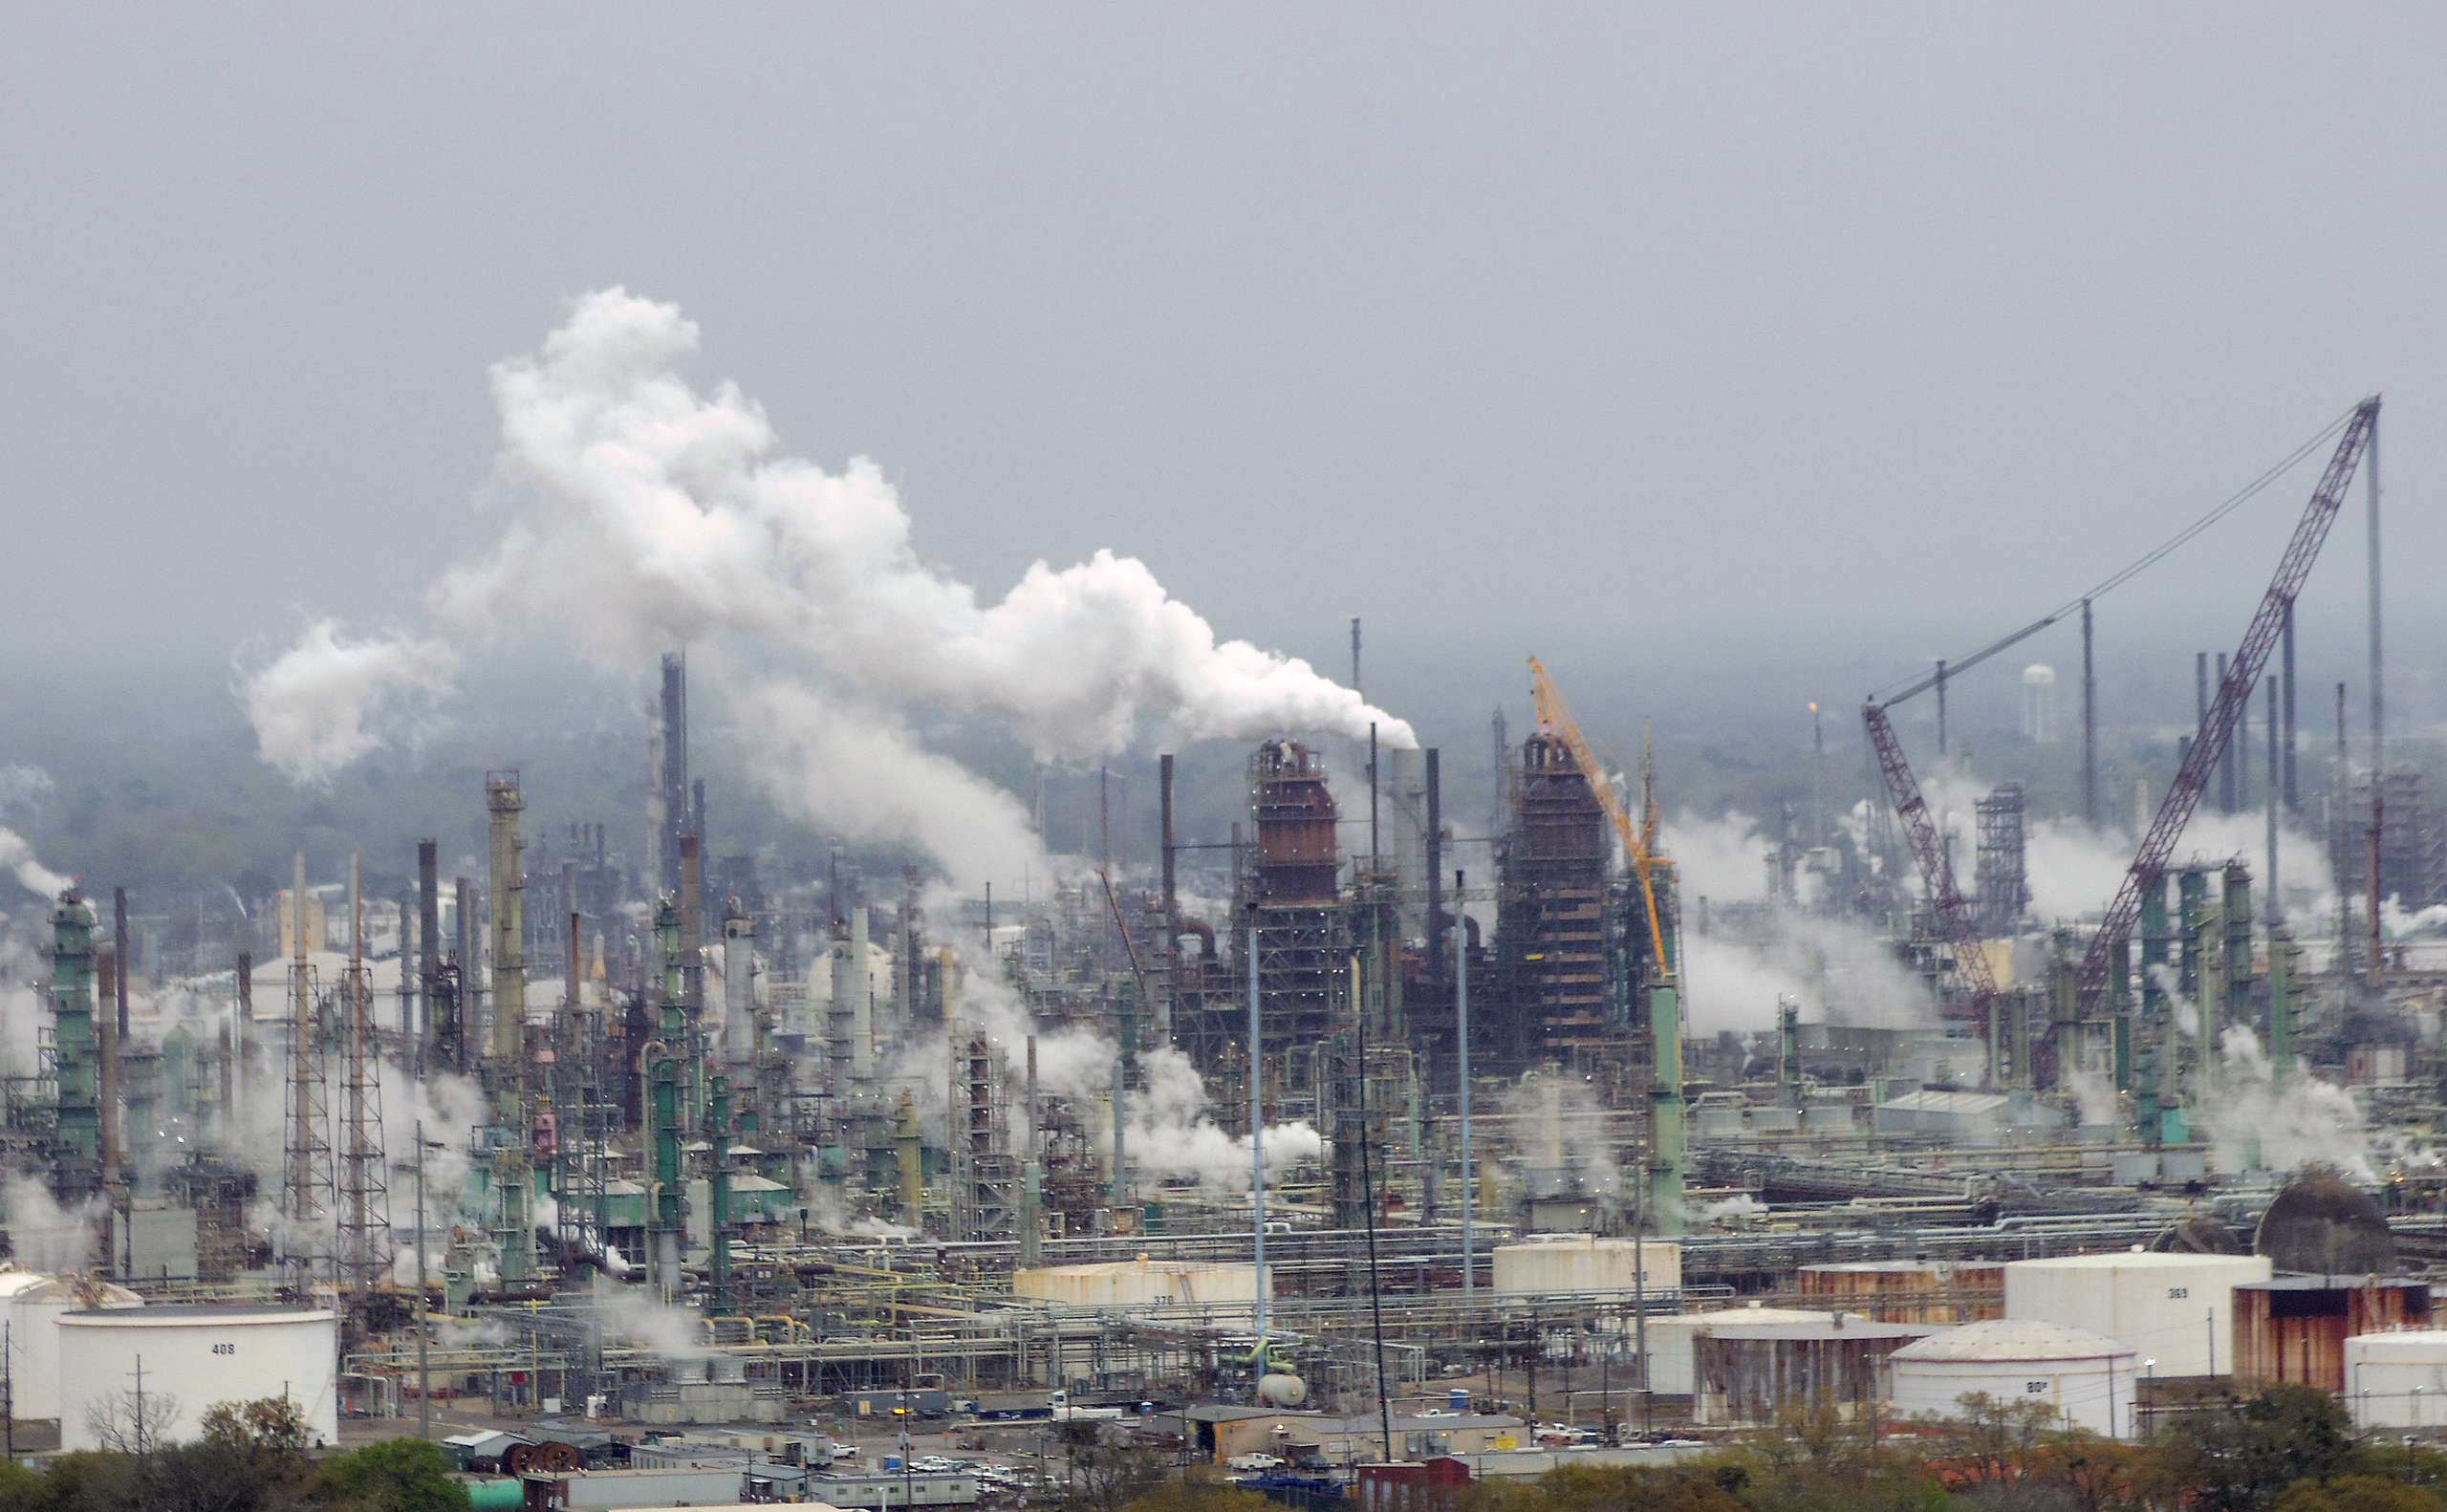 Exxon_Mobil_oil_refinery_-_Baton_Rouge,_Louisiana